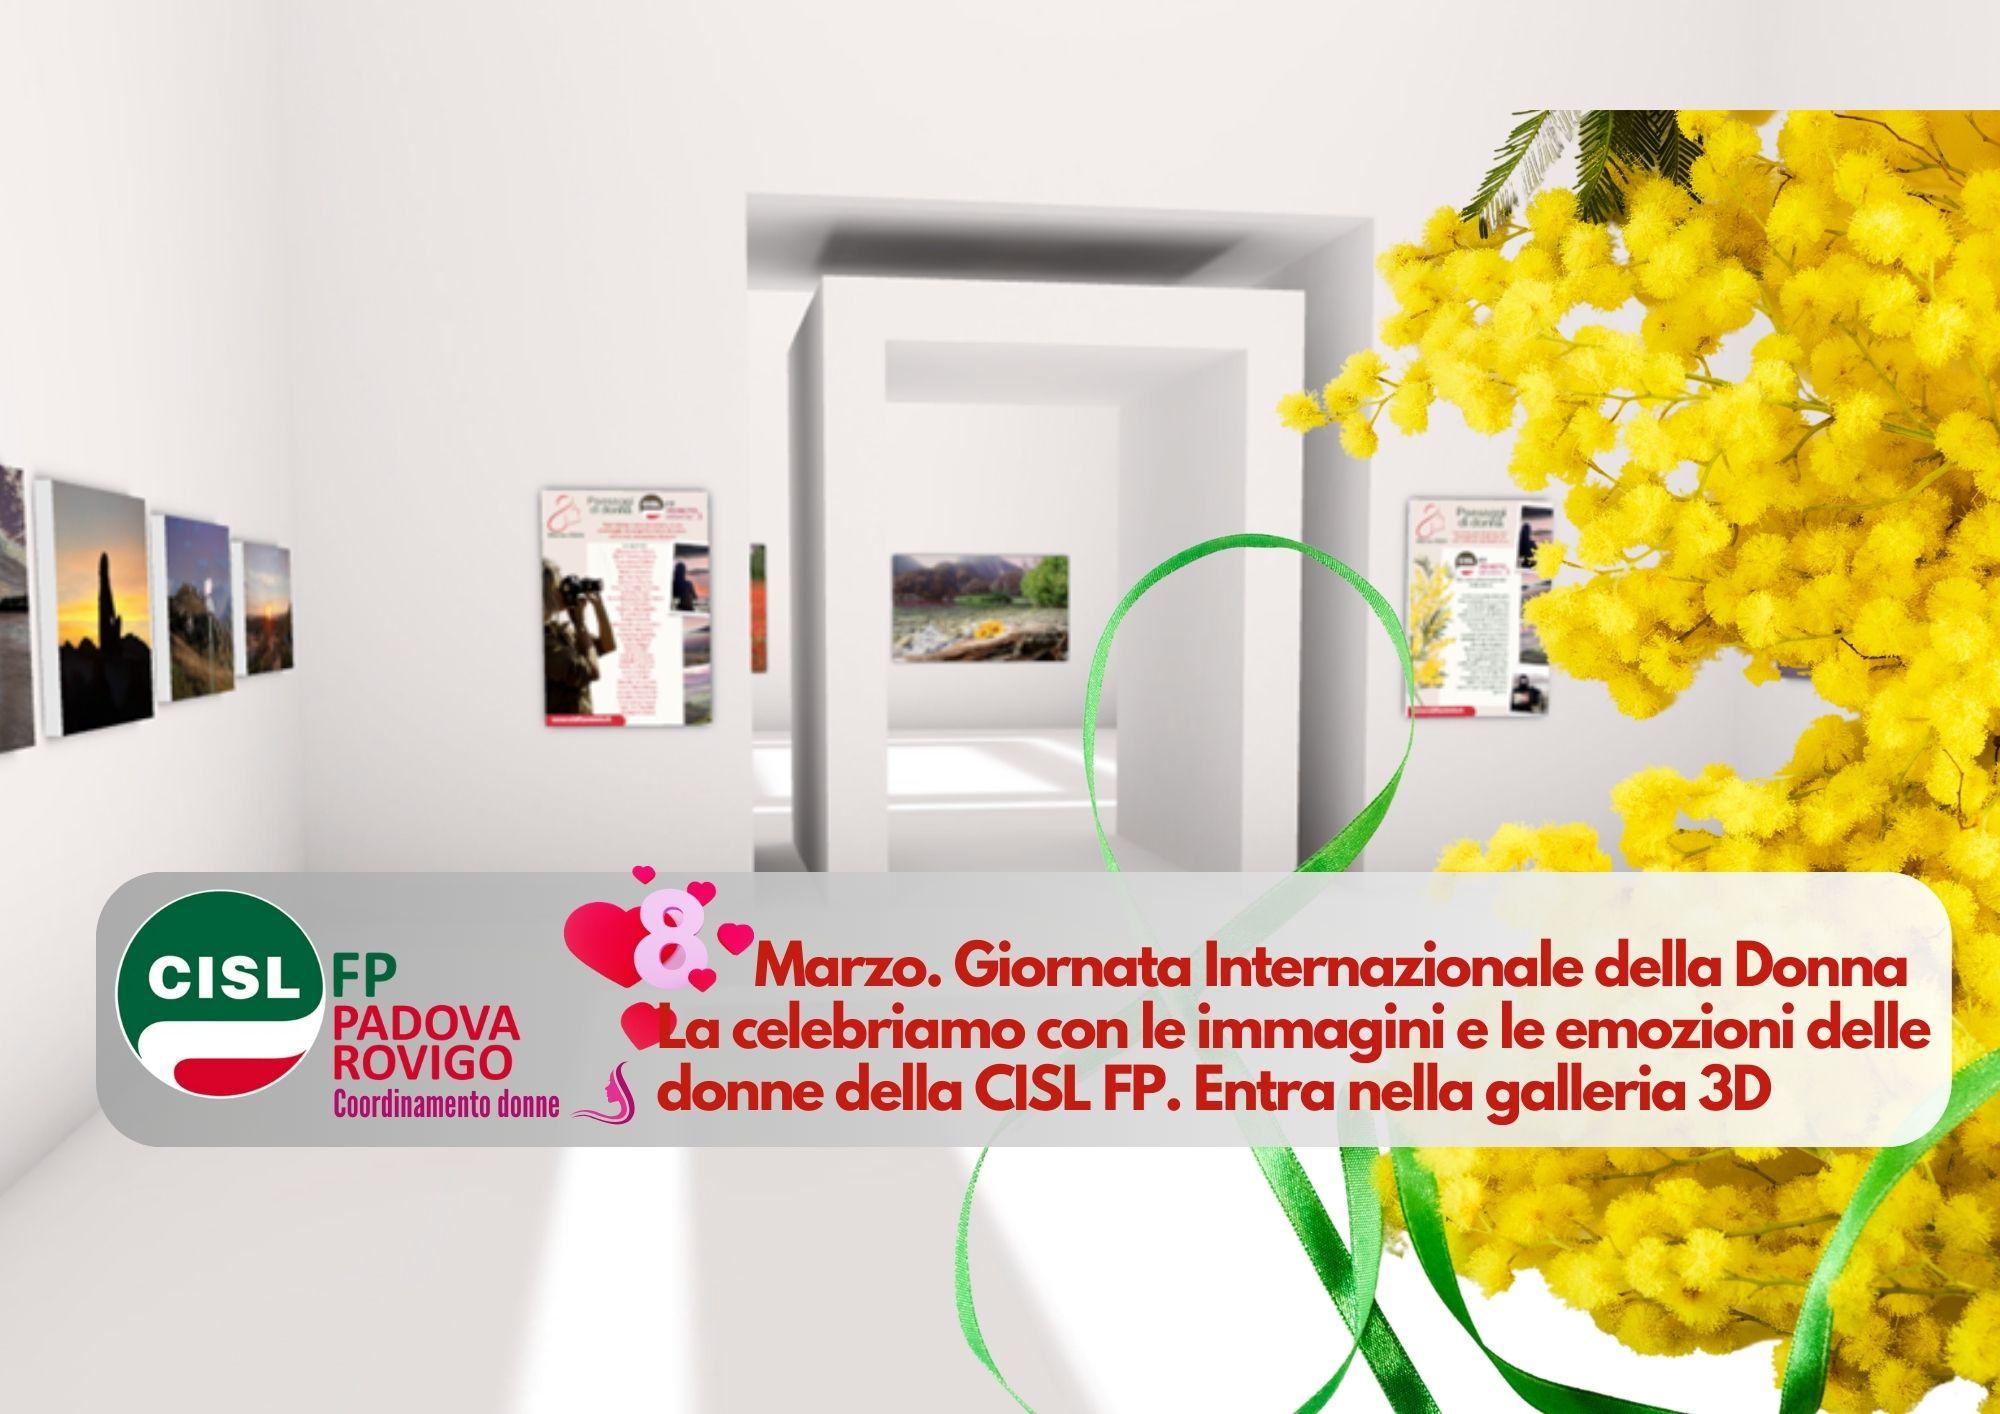 CISL FP Padova Rovigo. 8 Marzo Giornata Internazionale della Donna. La celebriamo con "Paesaggi di donna"